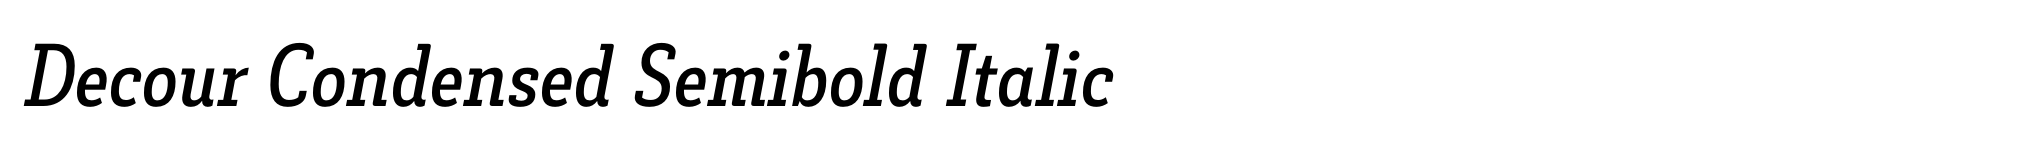 Decour Condensed Semibold Italic image